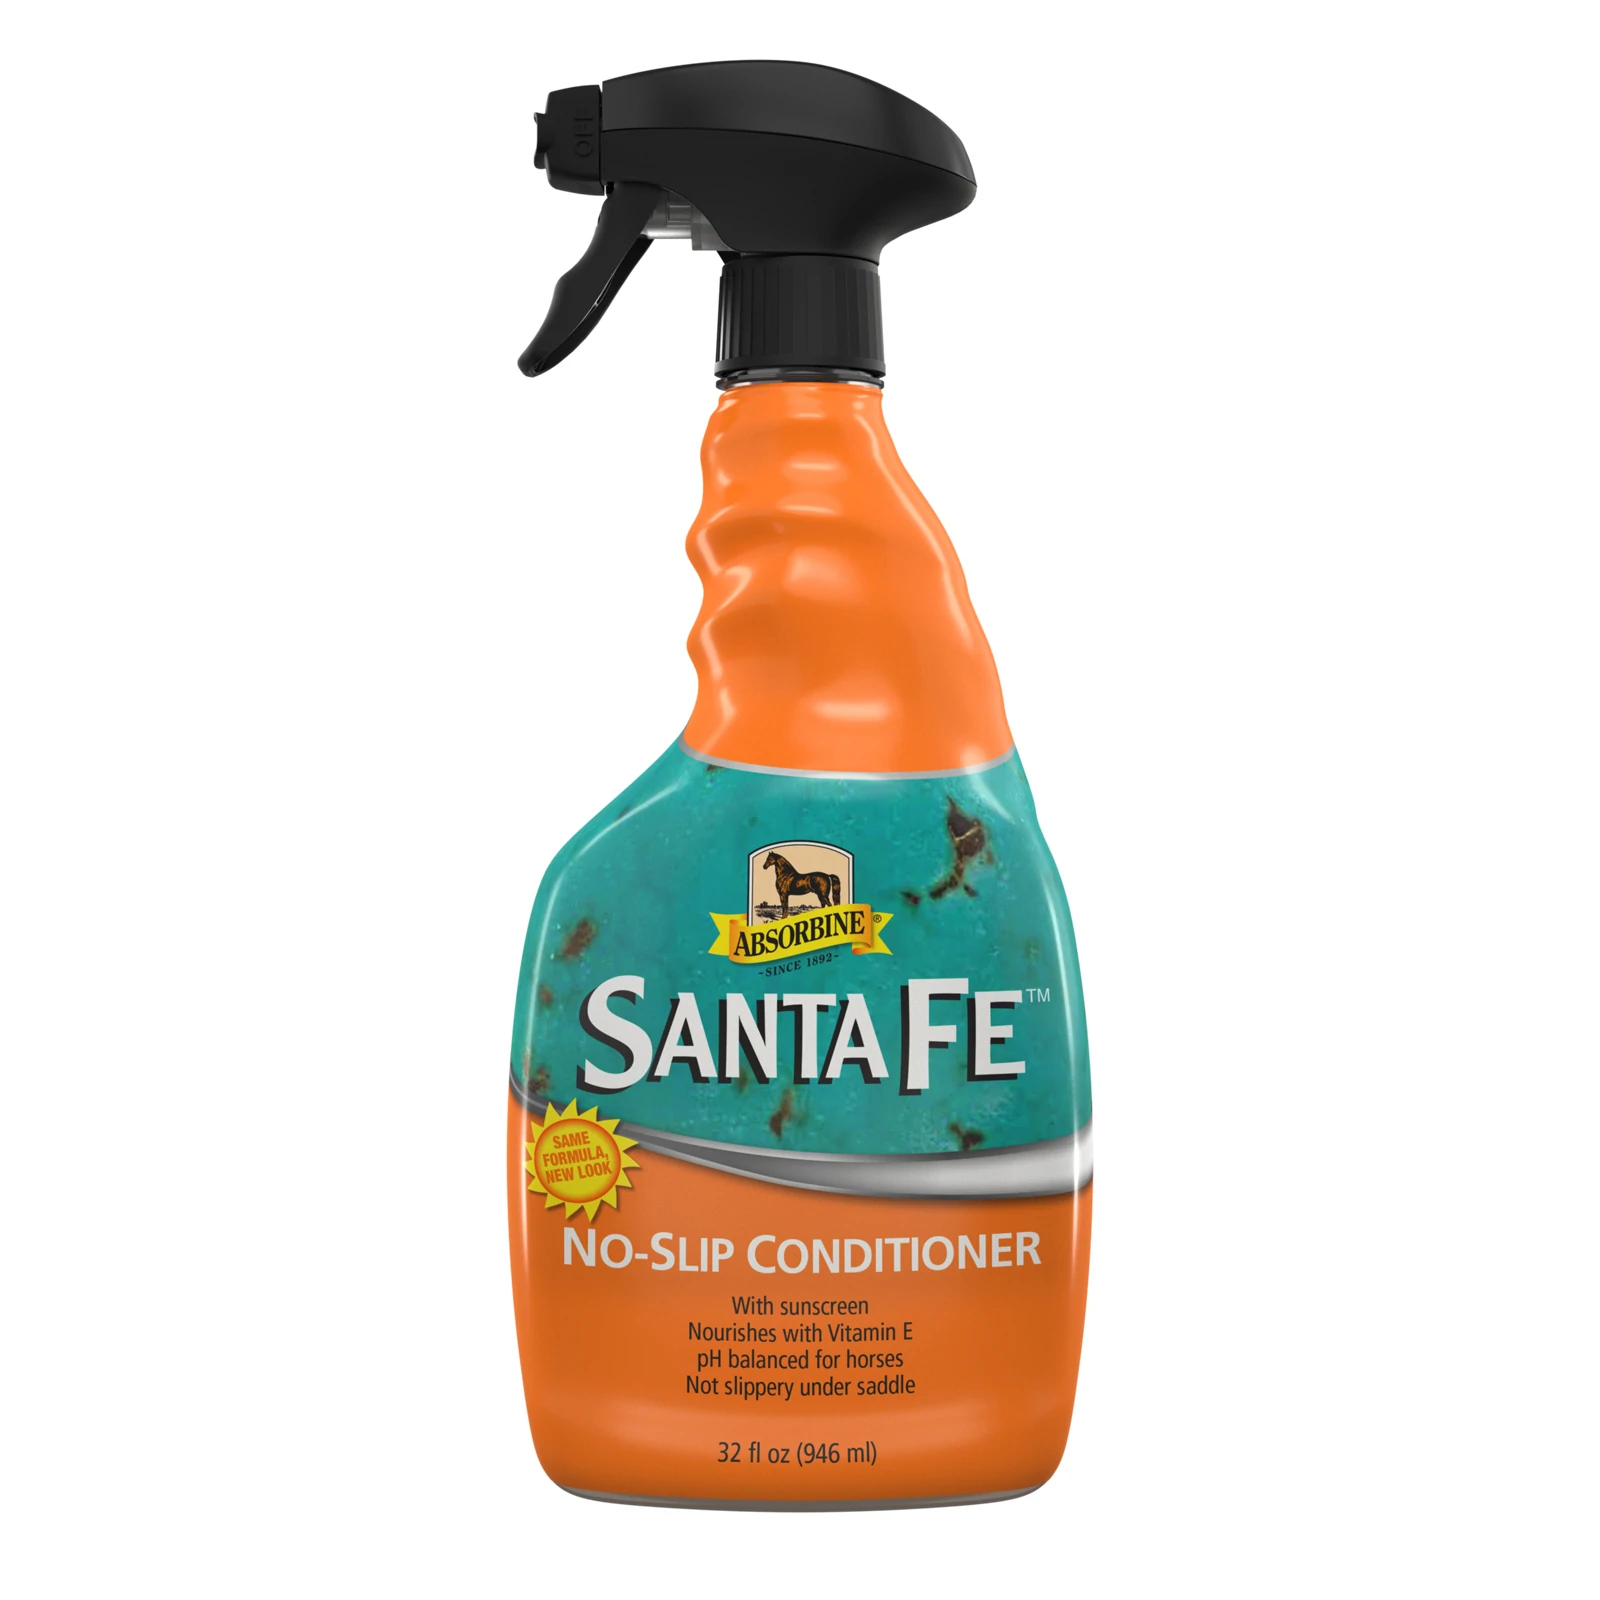 Absorbine Santa Fe Conditioner